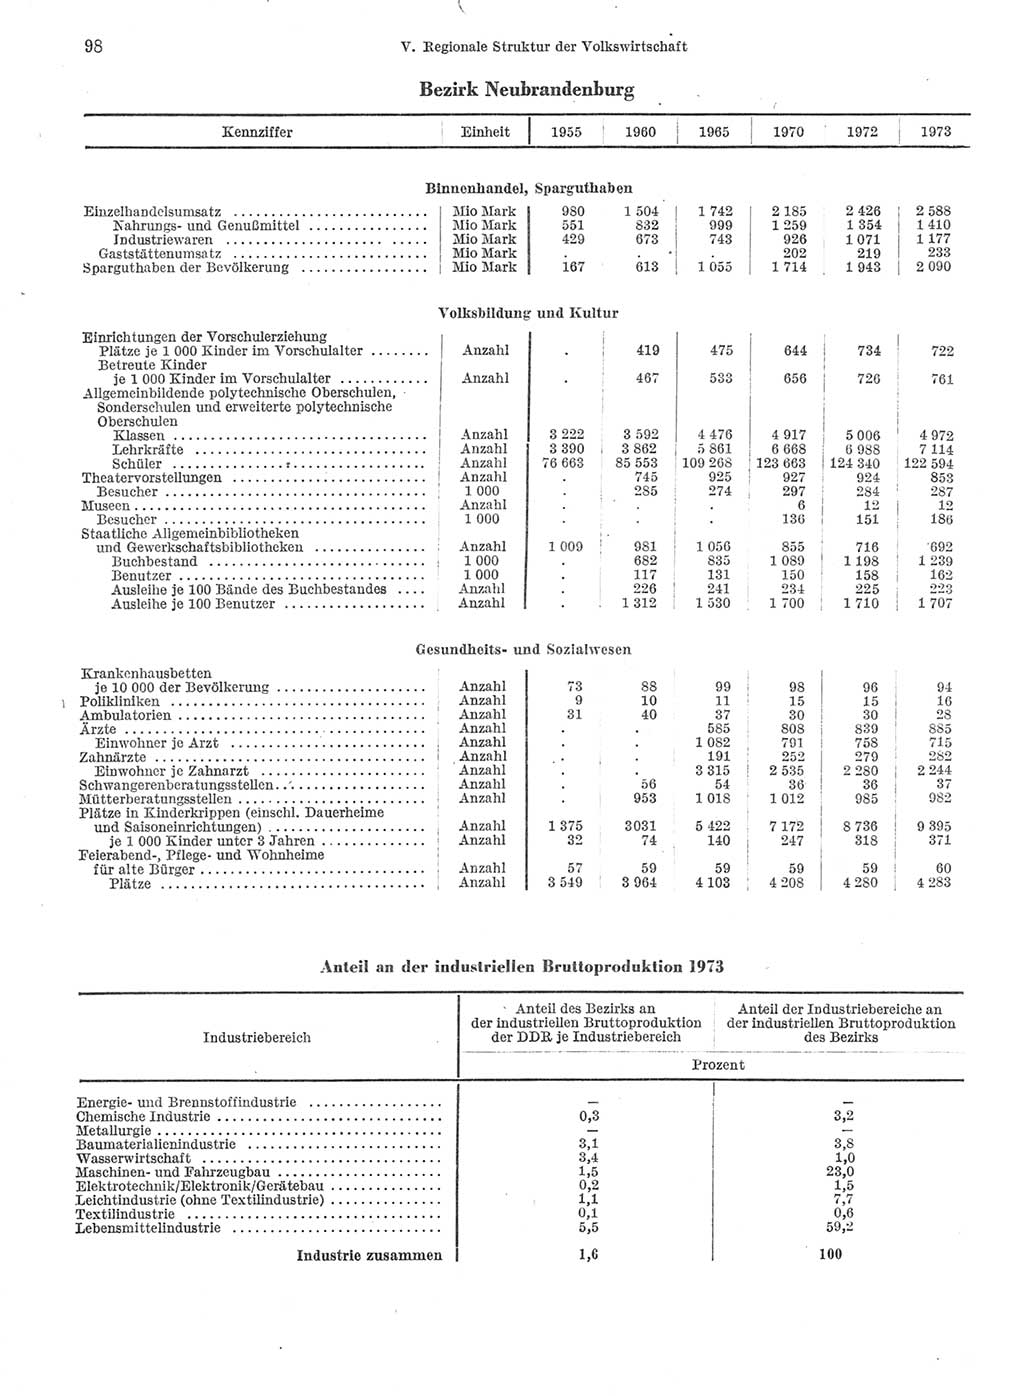 Statistisches Jahrbuch der Deutschen Demokratischen Republik (DDR) 1974, Seite 98 (Stat. Jb. DDR 1974, S. 98)